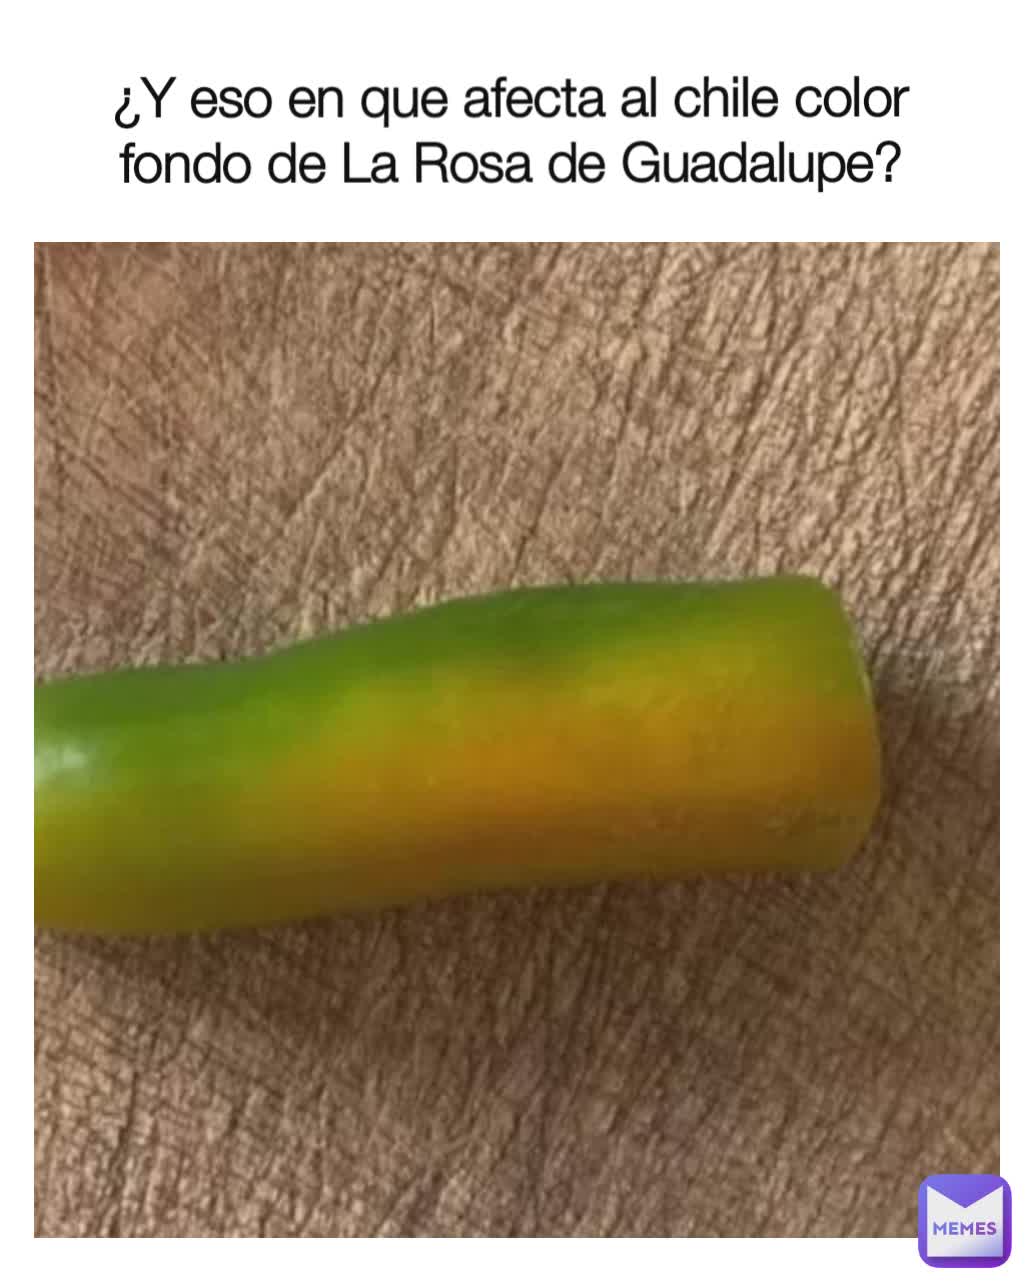 ¿Y eso en que afecta al chile color fondo de La Rosa de Guadalupe?